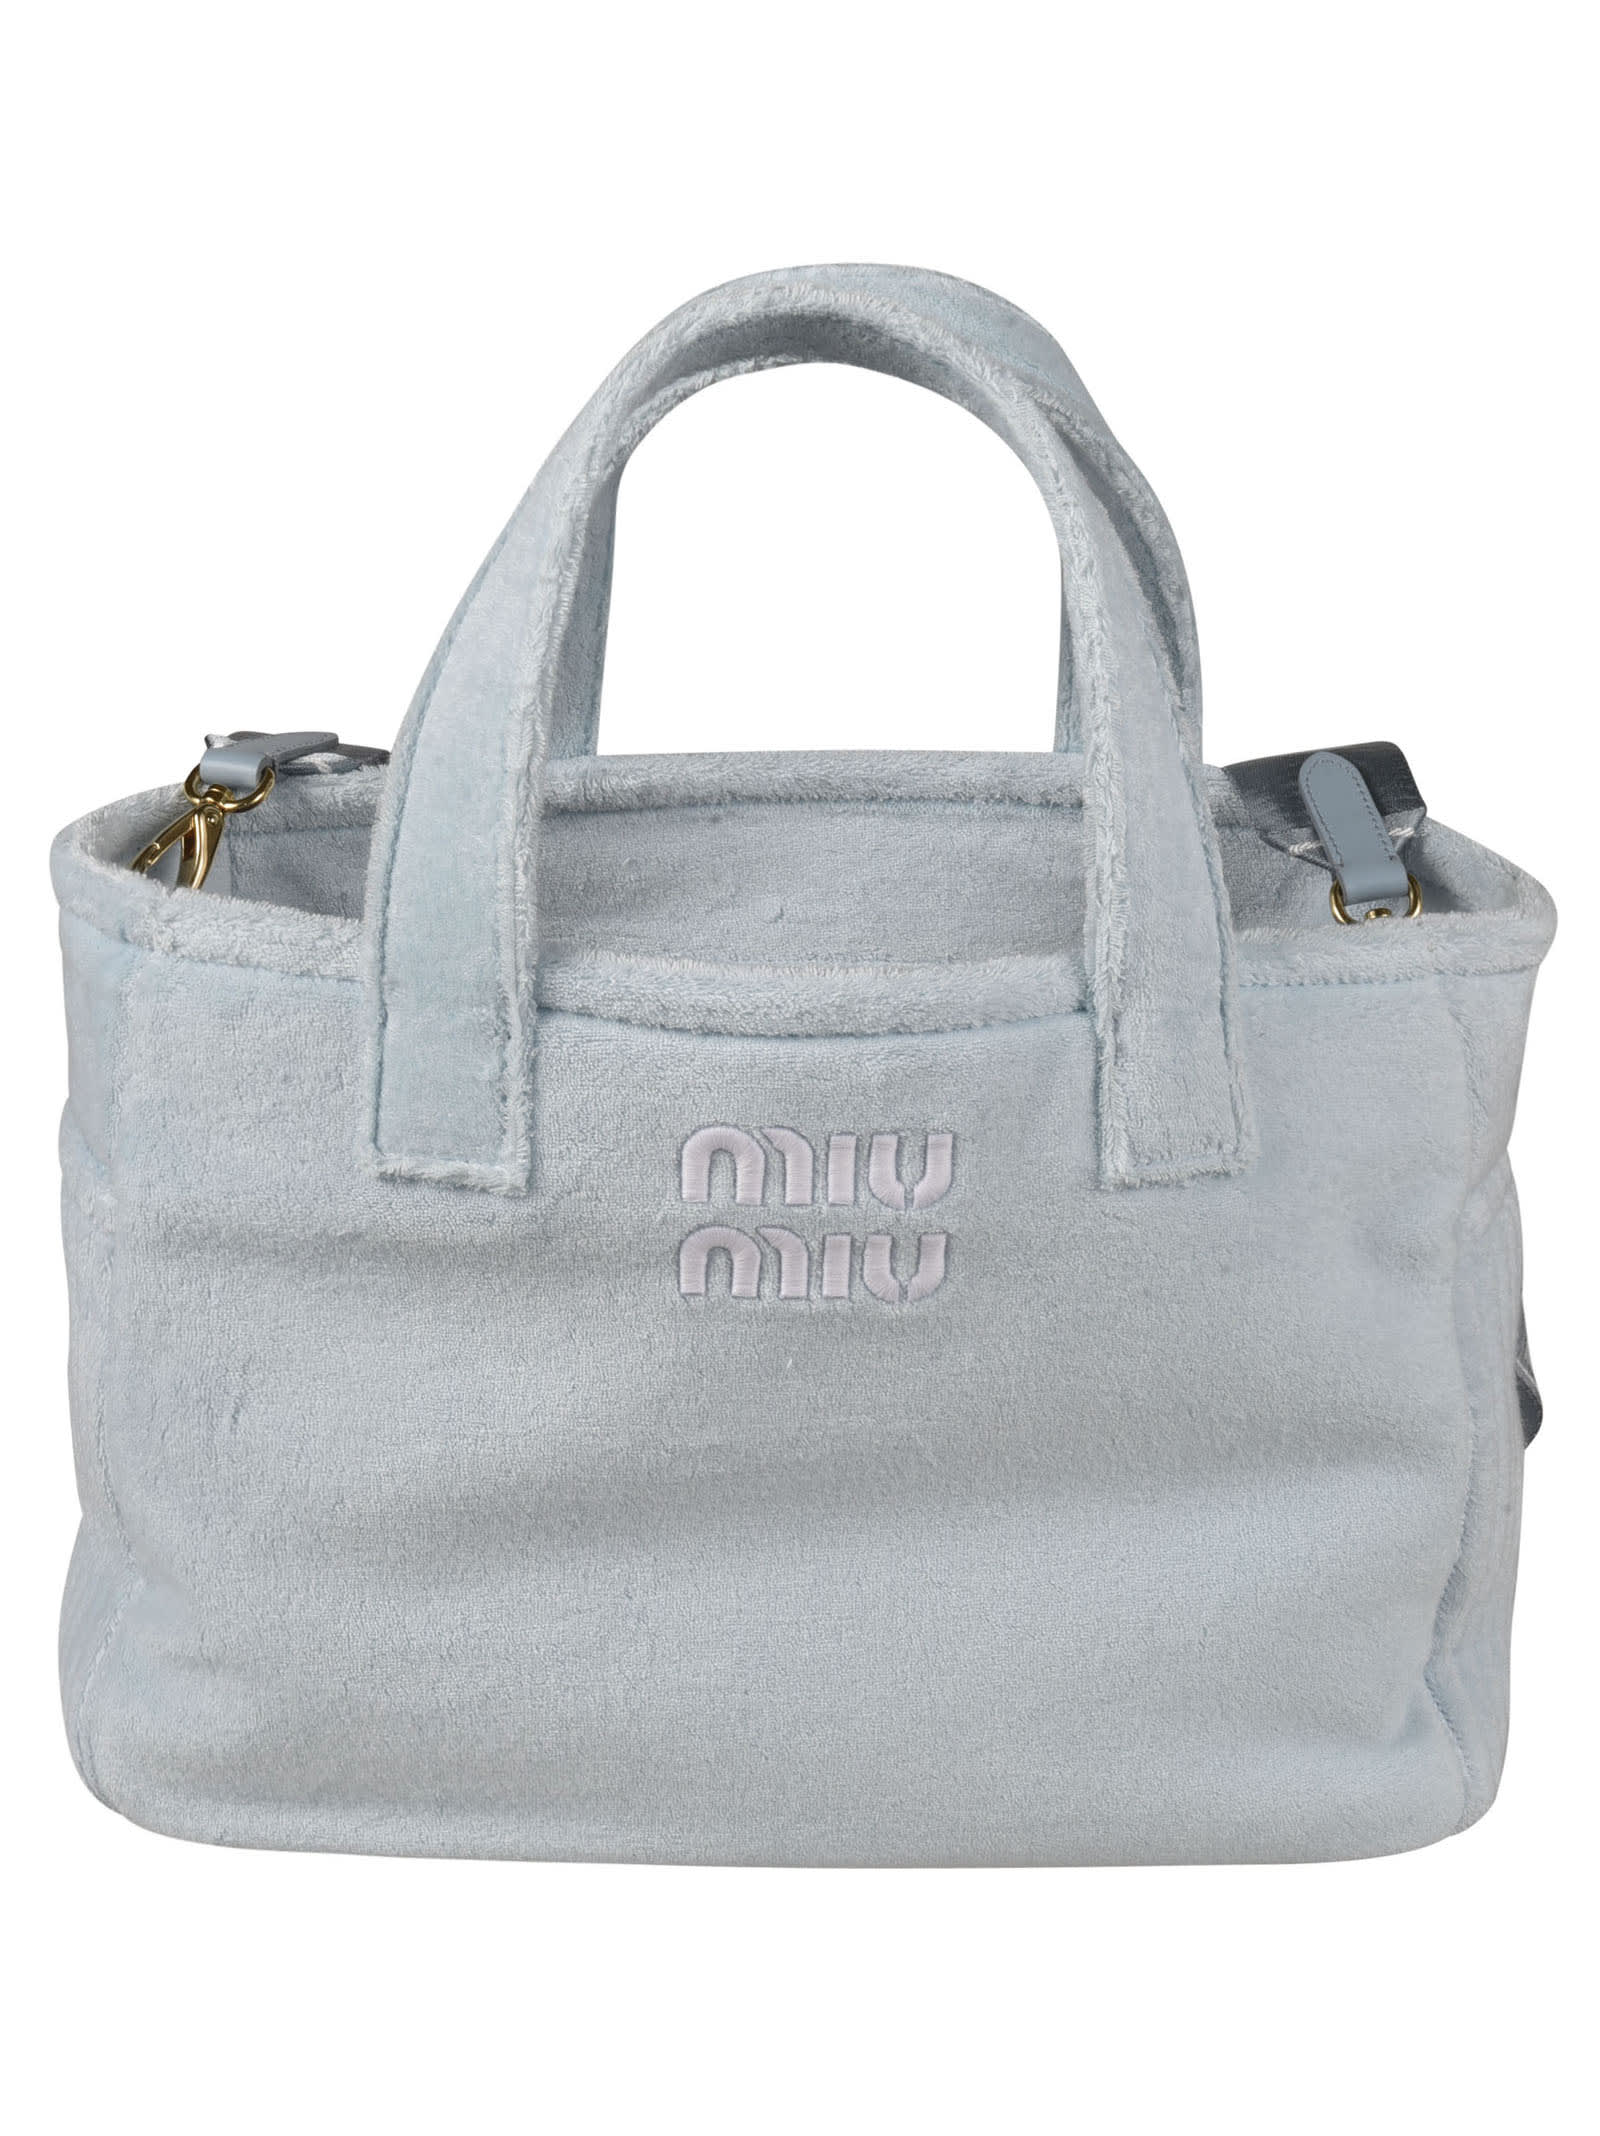 Miu Miu Logo Embossed Top Handle Shopper Bag